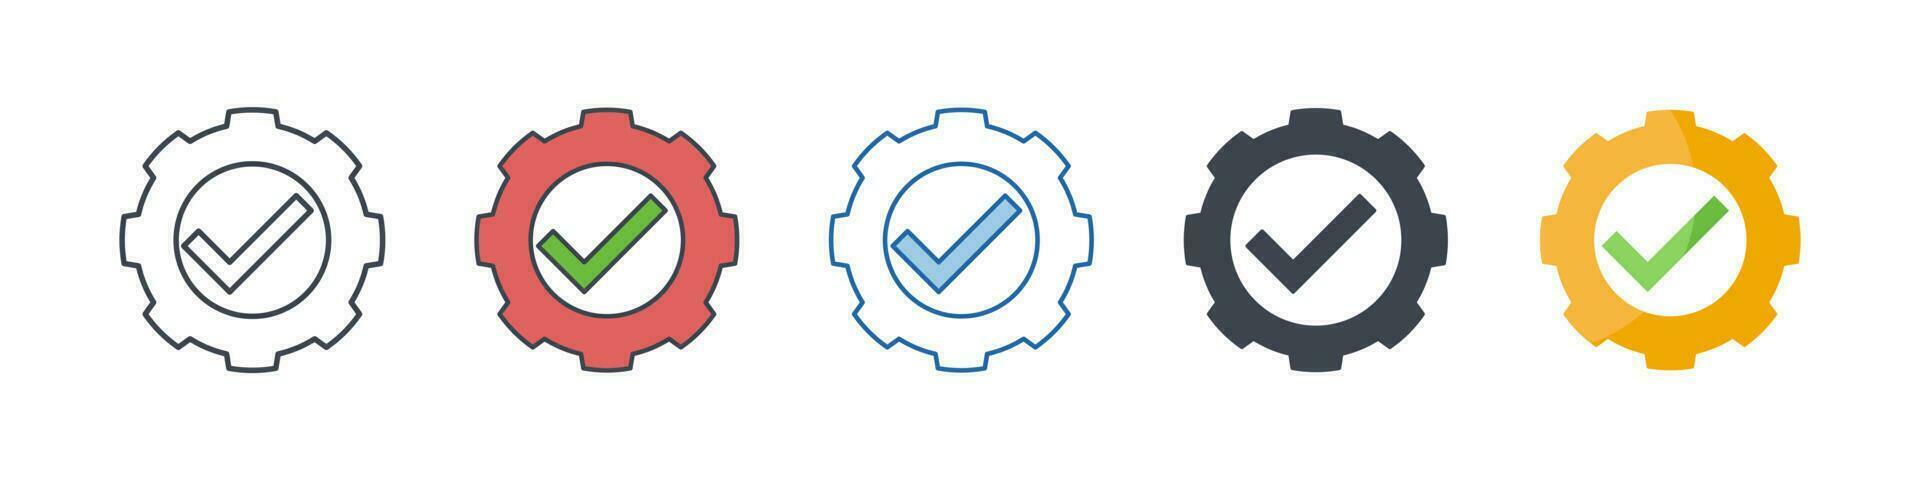 engrenagem Verifica marca ícone símbolo modelo para gráfico e rede Projeto coleção logotipo vetor ilustração